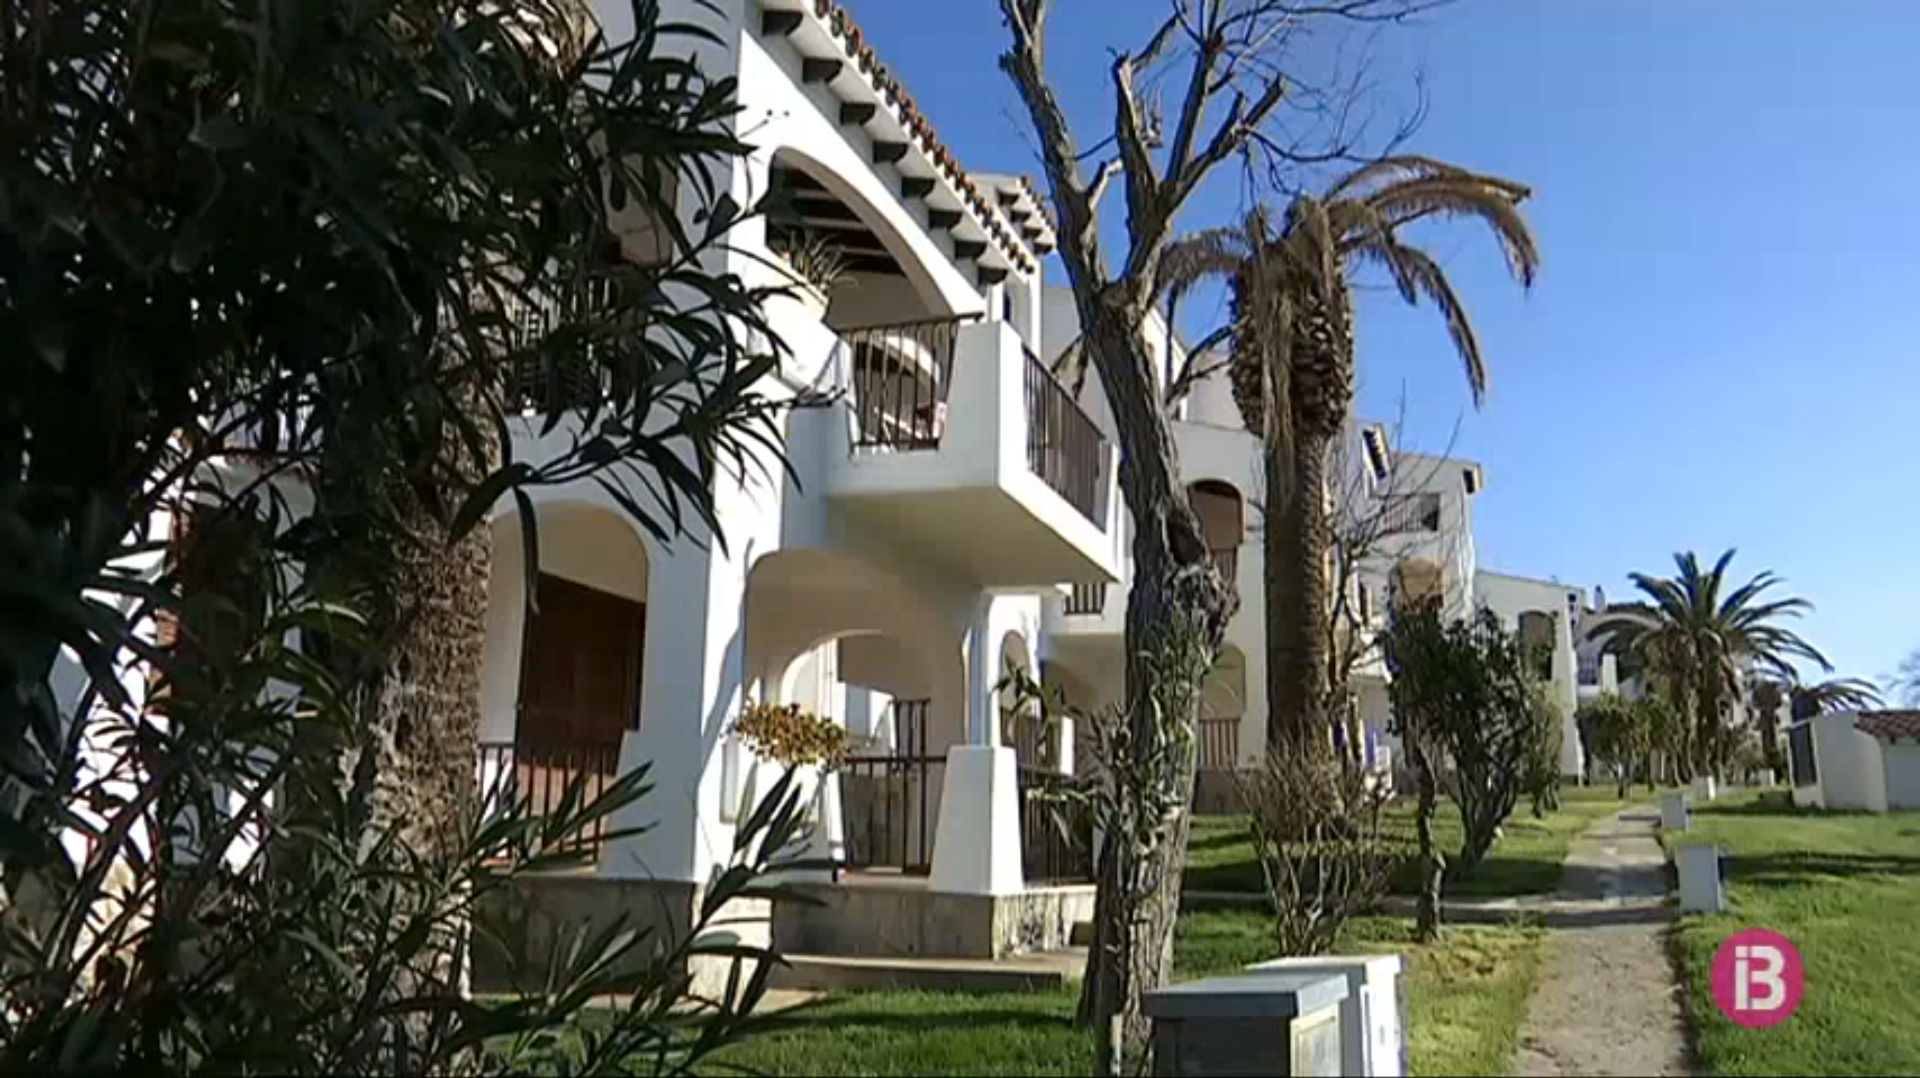 Les pernoctacions en apartaments turístics cauen un 16,5%25 a Balears respecte de l’any passat